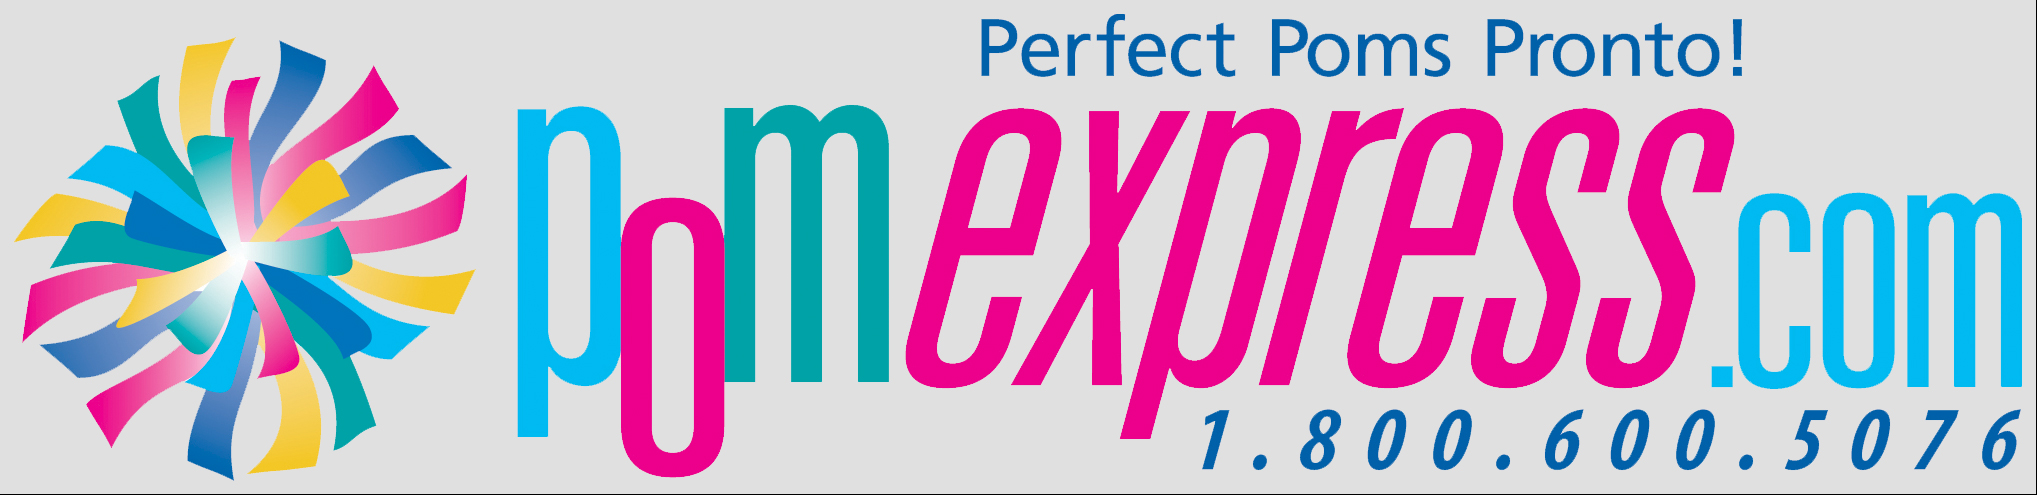 pom express logo with e0e0e0 background